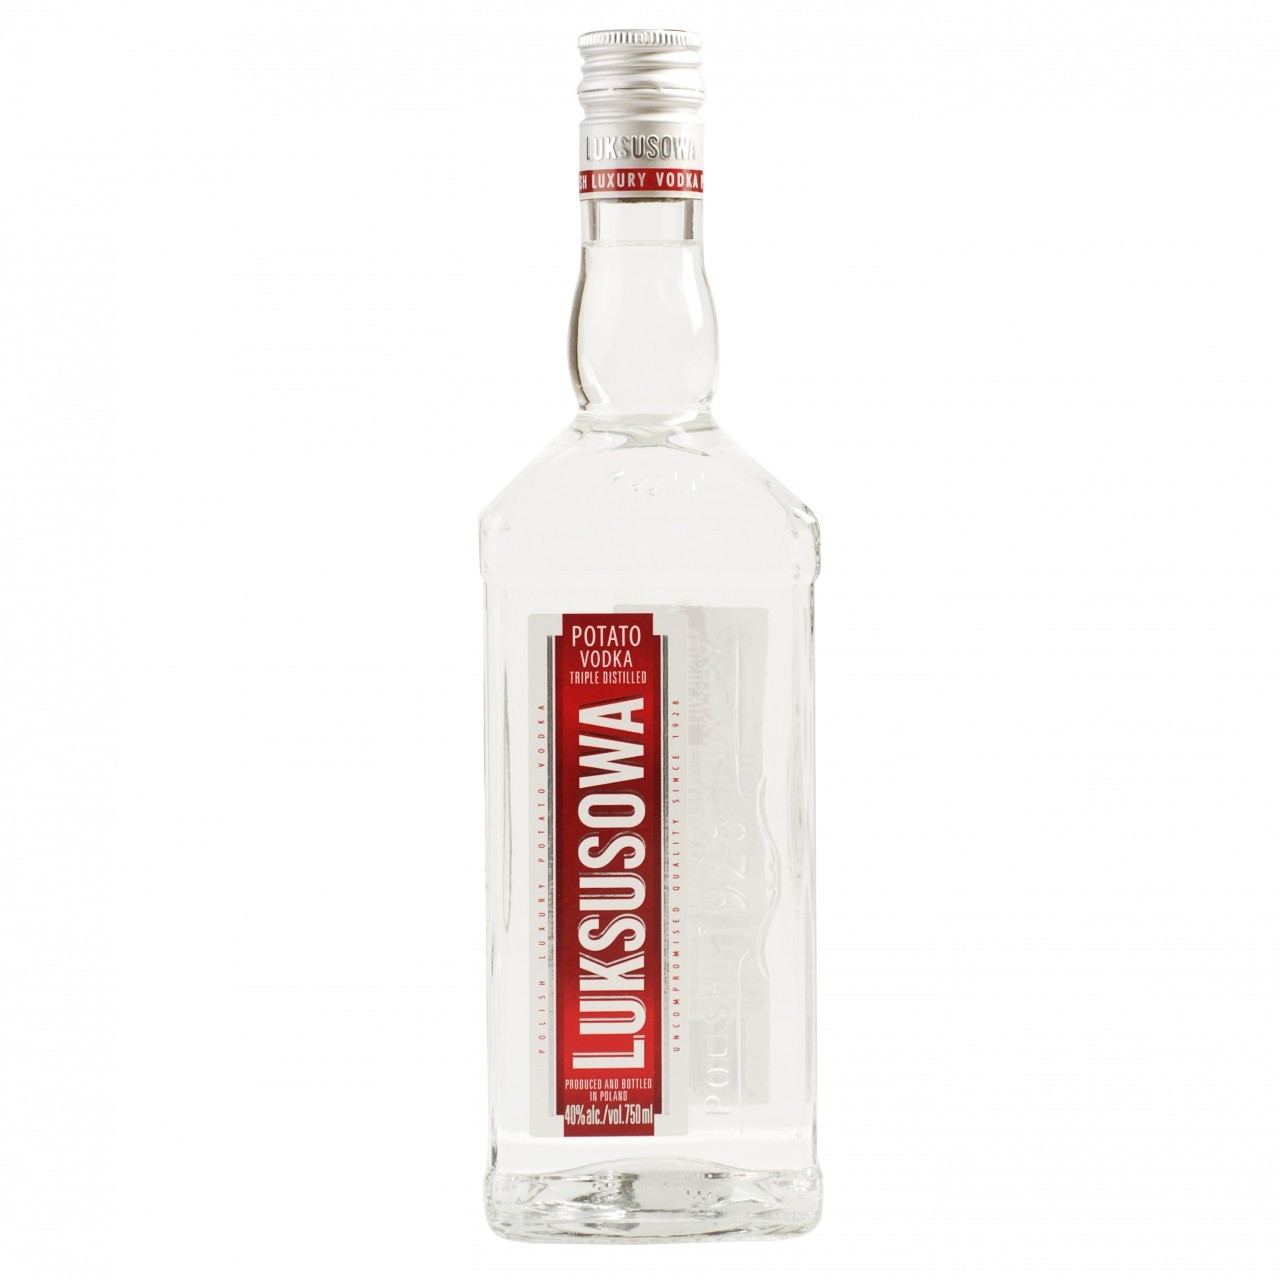 Potato Vodka Brands
 Luksusowa Potato Vodka 750ml Crown Wine & Spirits